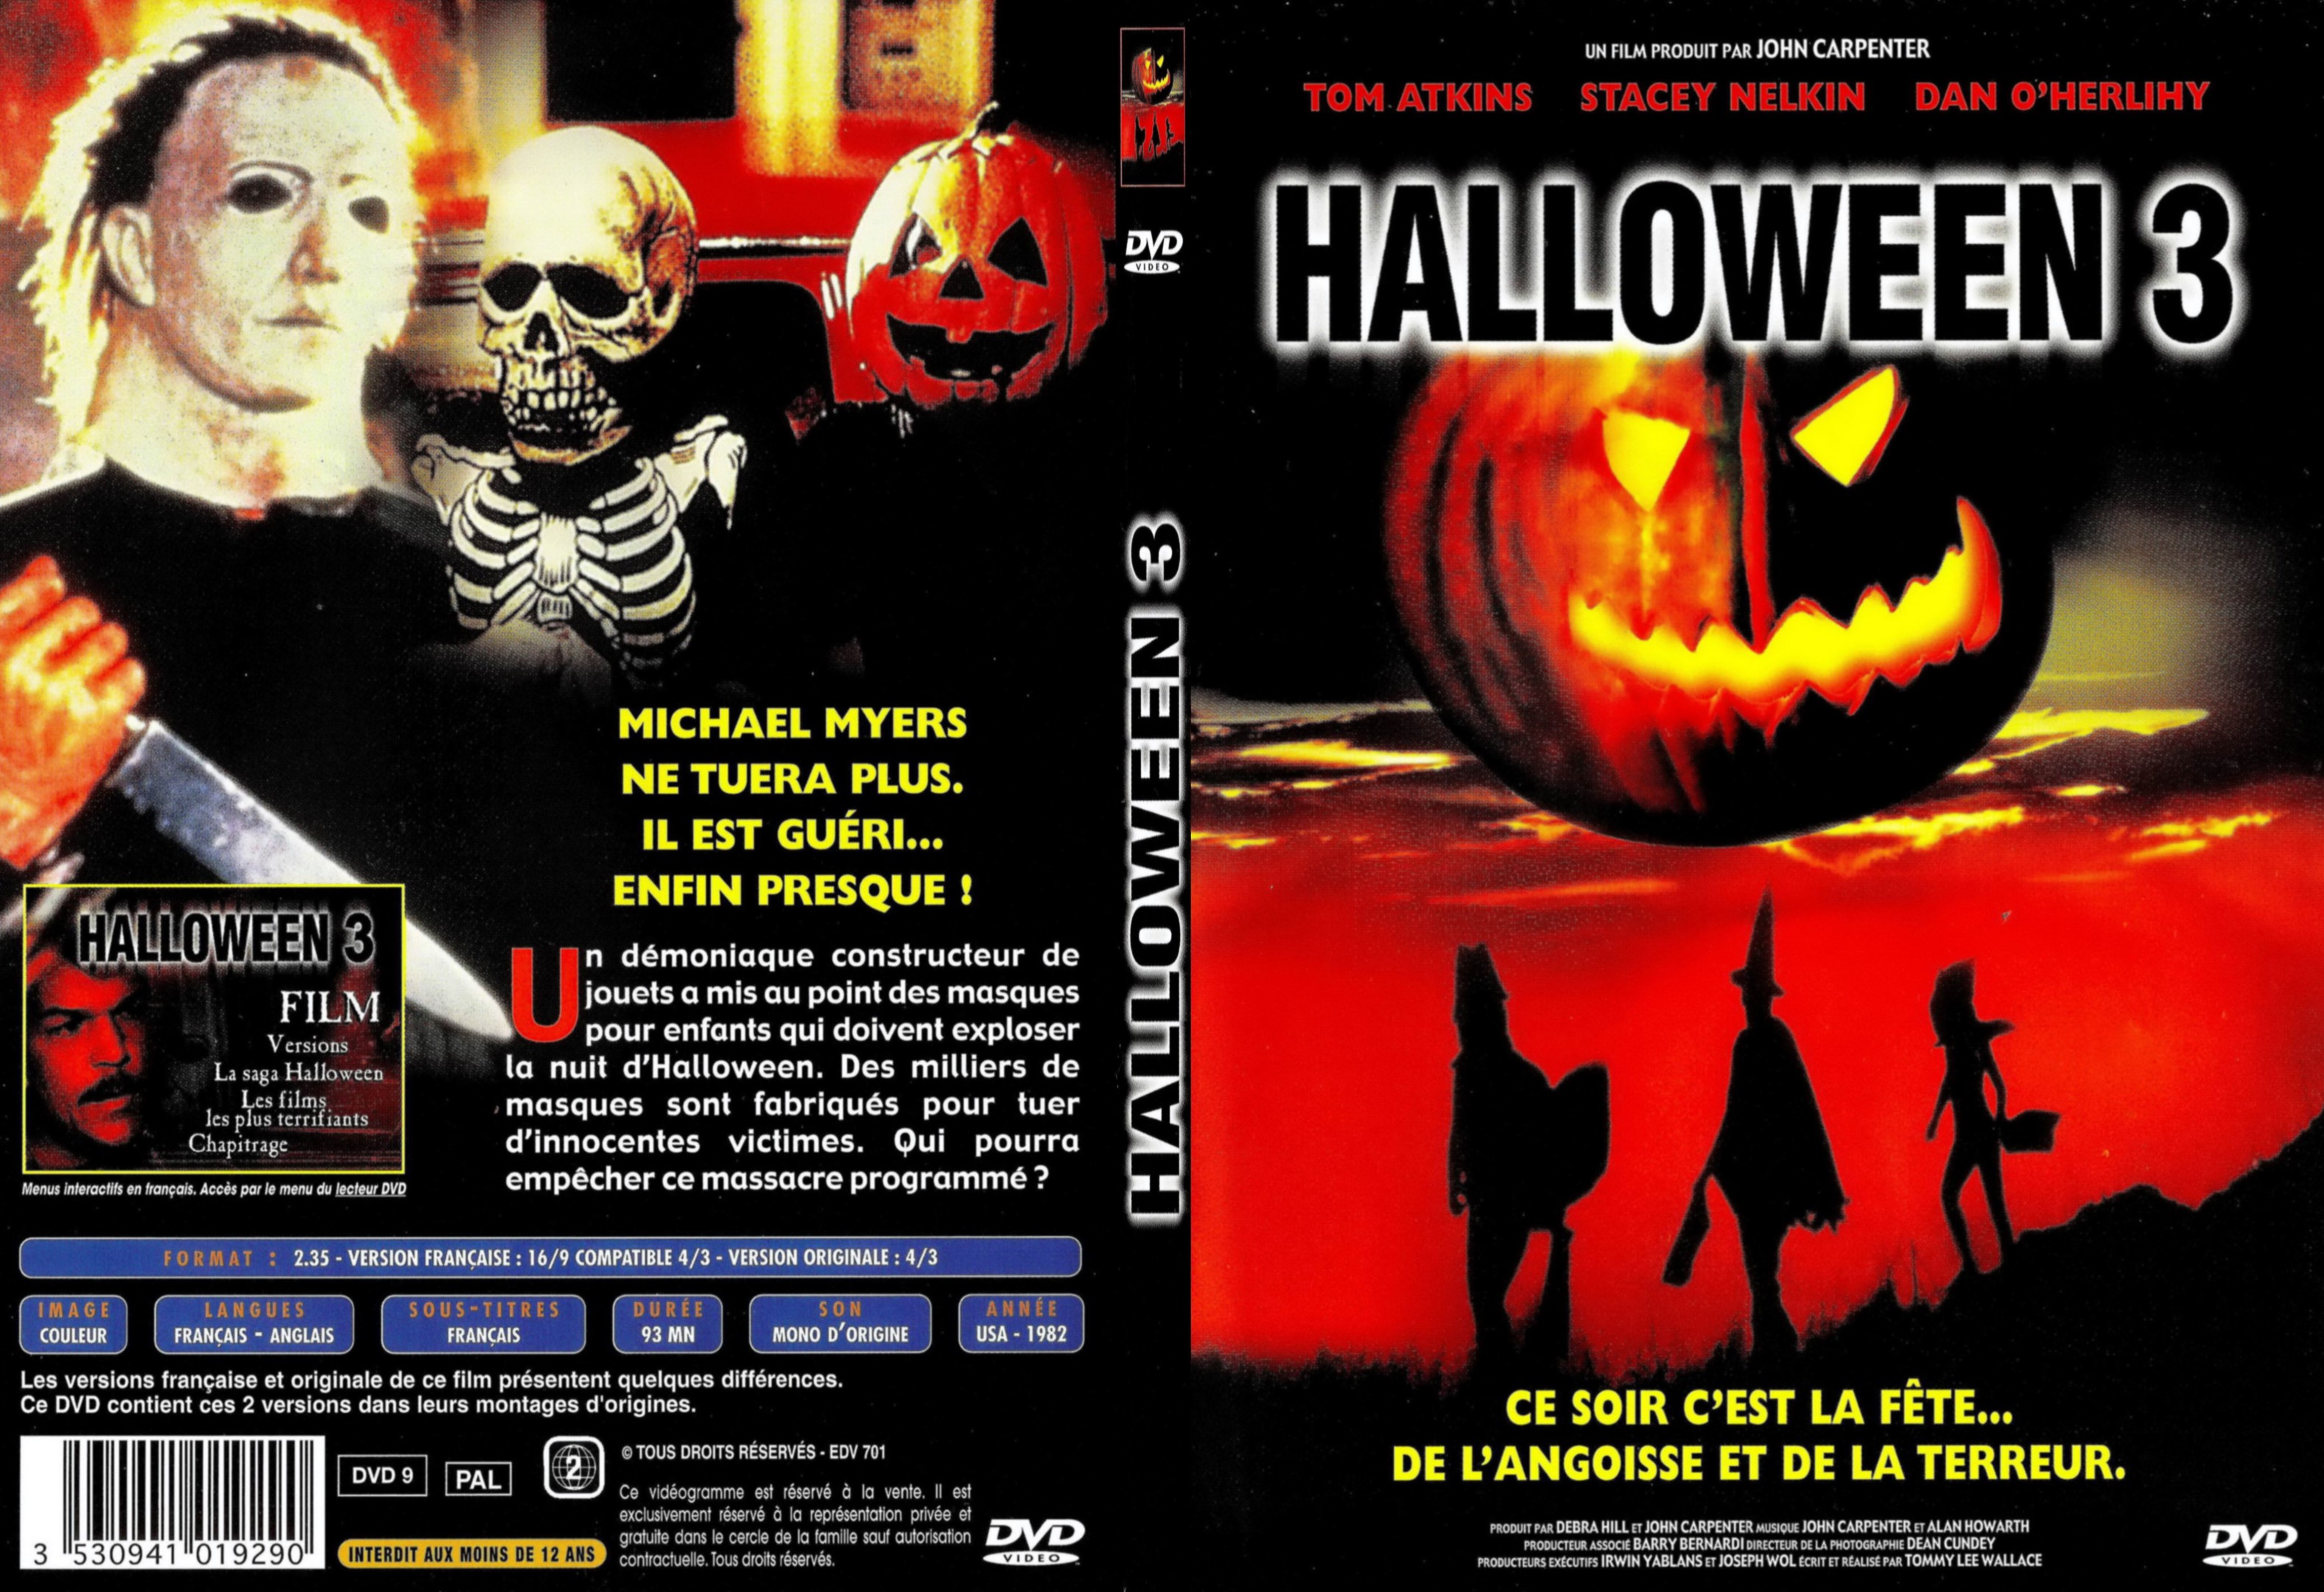 Jaquette DVD Halloween 3 - SLIM